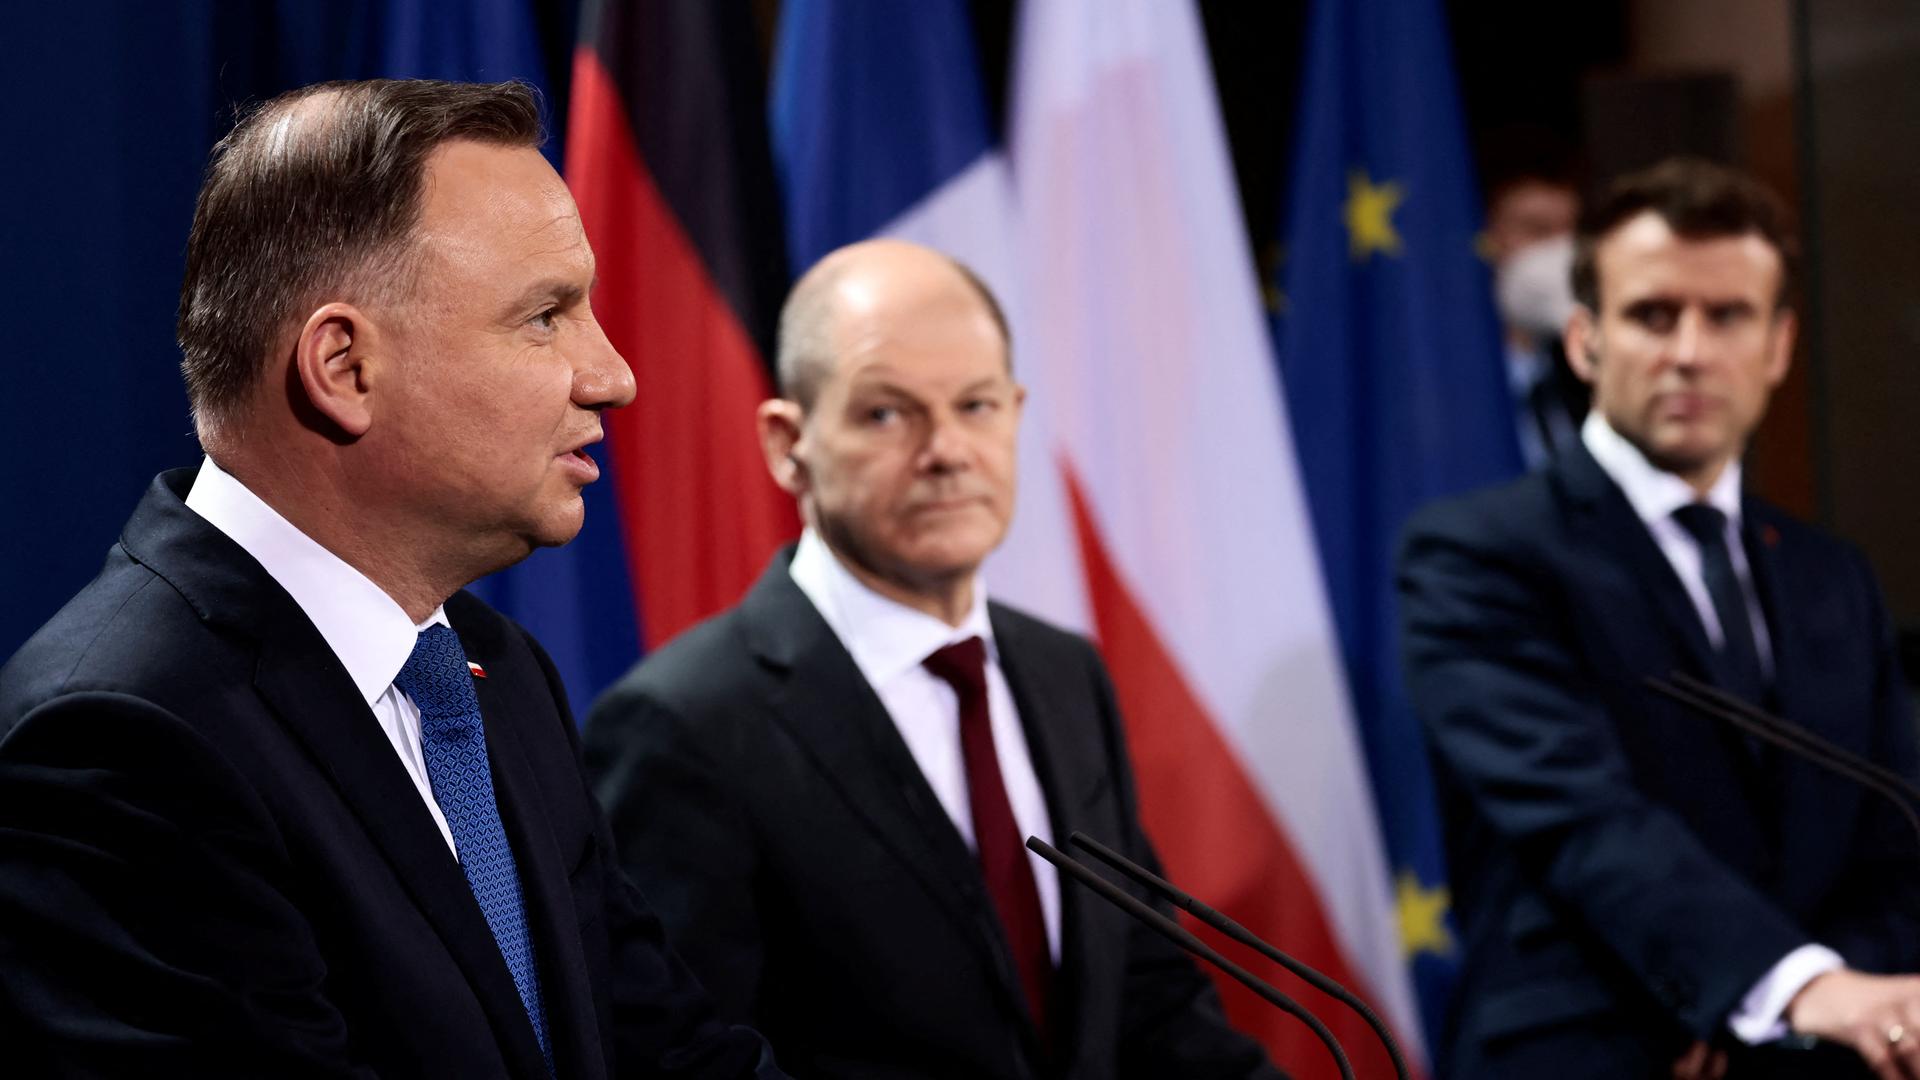 Der polnische Staatspräsident Andrzej Duda, Bundeskanzler Olaf Scholz (SPD) und der französische Präsident Emmanuel Macro (l-r) sprechen bei den Auftakt-Statements vor einem Treffen des sogenannten Weimarer Dreiecks.